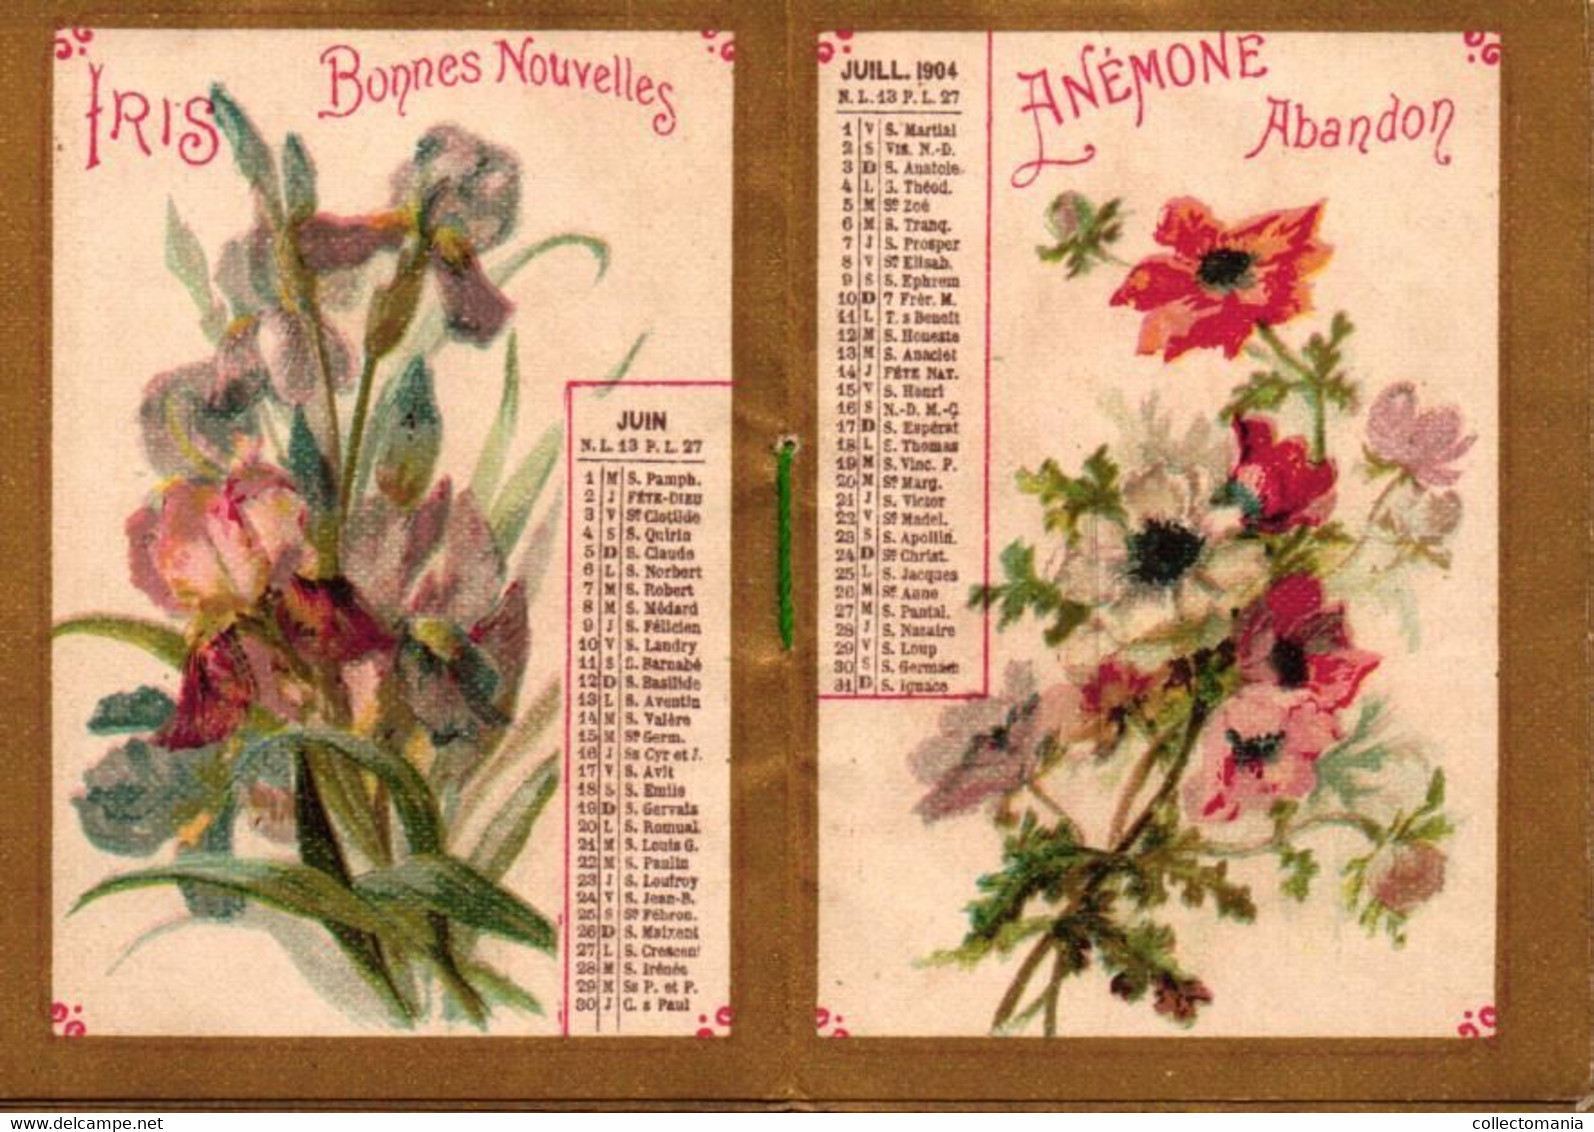 1 Carnet Booklet Calendrier 1904  Bazar Laffitte Dictionnaire Plantes Narcisse Girofle Tulipes Iris Pavot CHISANTEME - Small : 1901-20